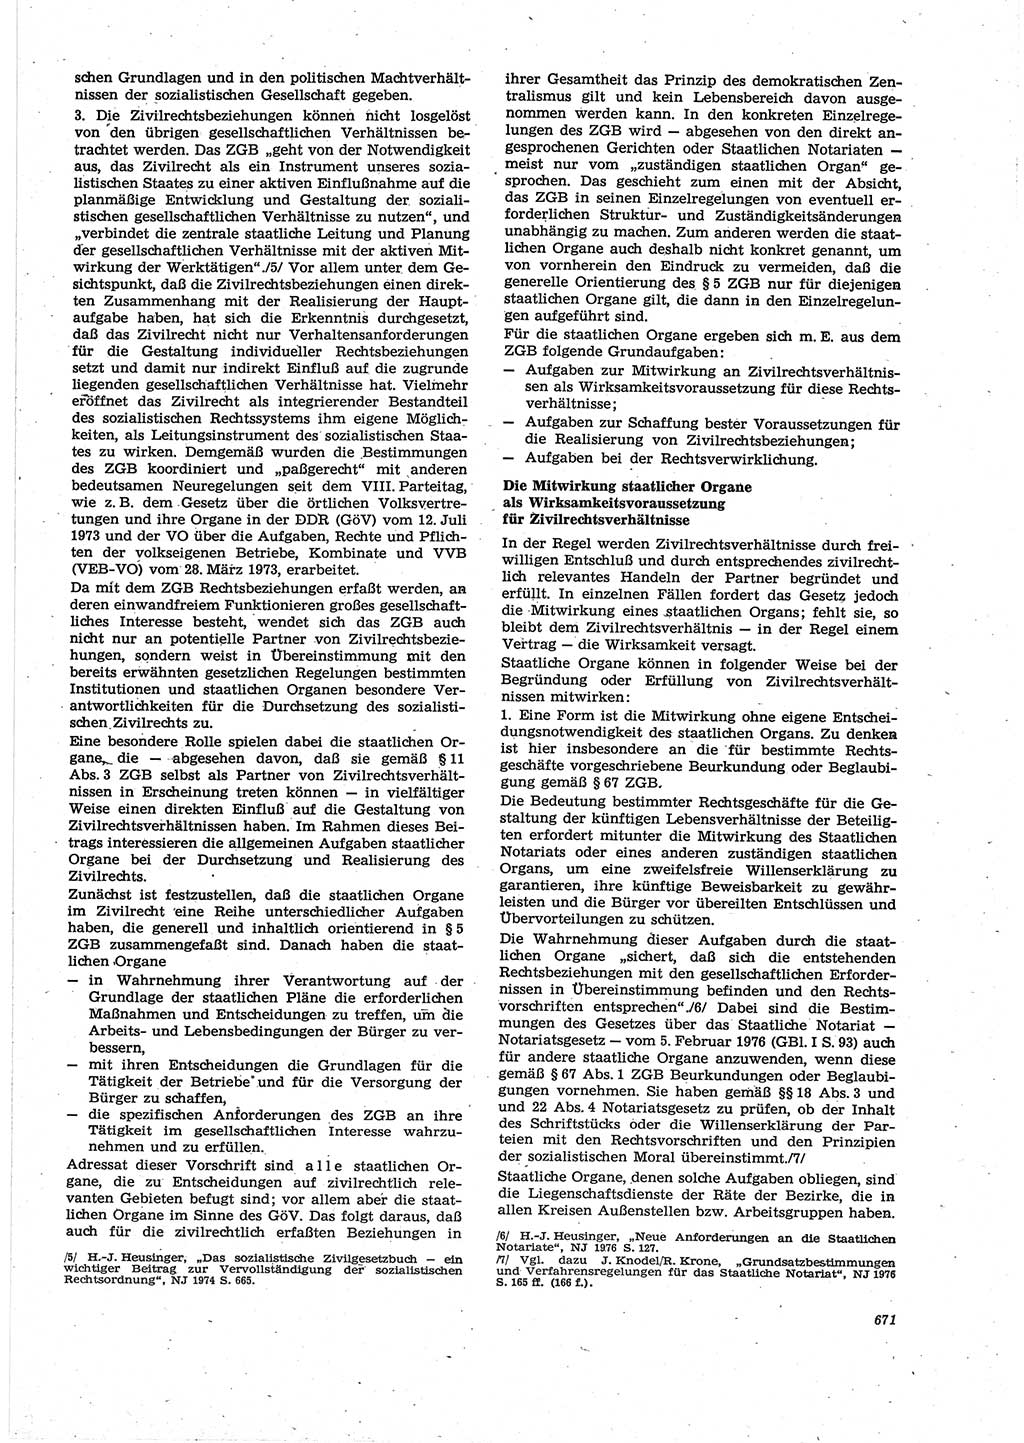 Neue Justiz (NJ), Zeitschrift für Recht und Rechtswissenschaft [Deutsche Demokratische Republik (DDR)], 30. Jahrgang 1976, Seite 671 (NJ DDR 1976, S. 671)